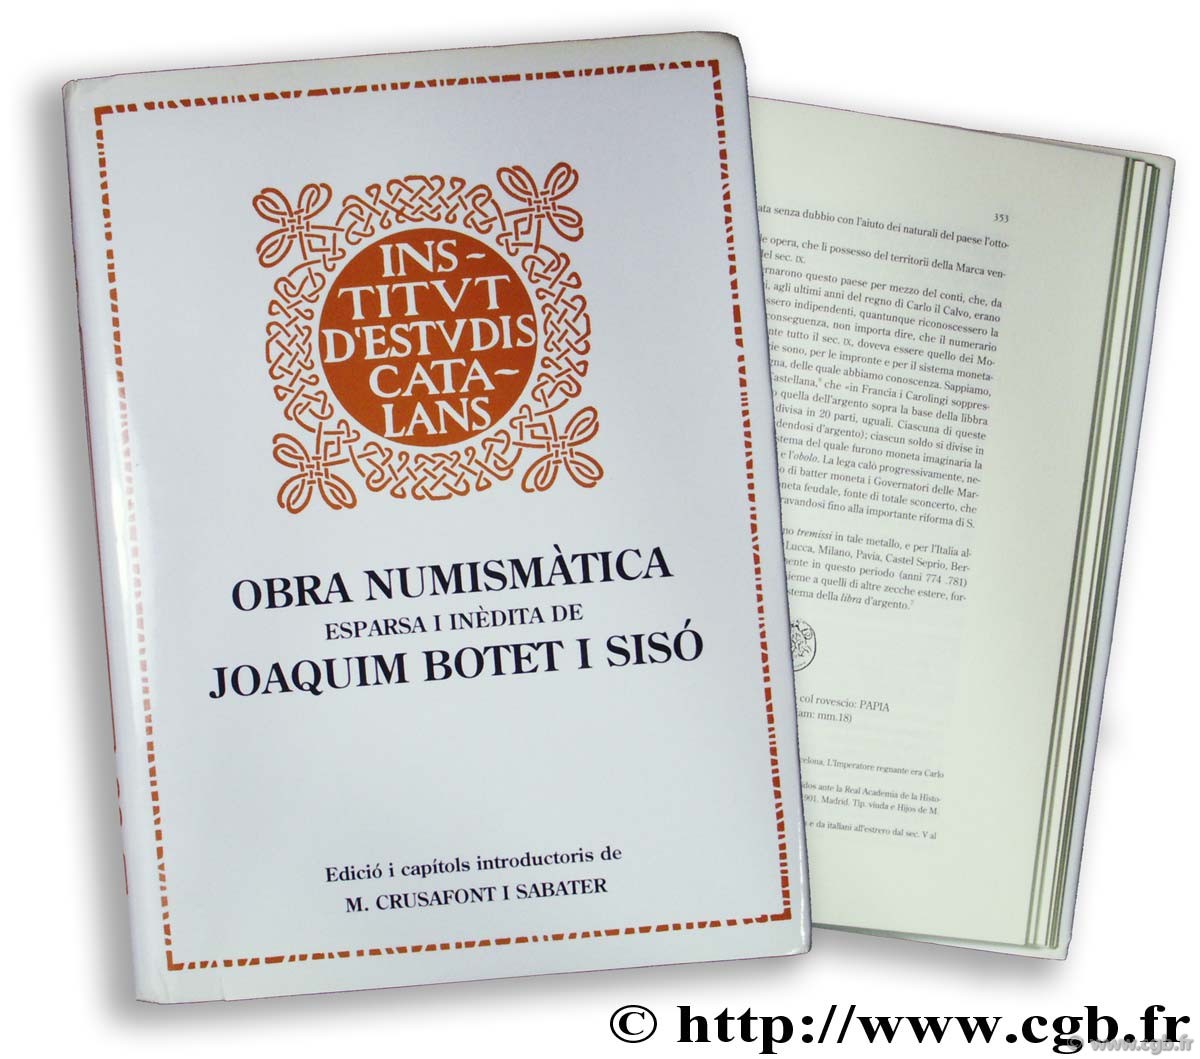 Obra numismàtica esparsa i inèdita de Joaquim Botet i Sisó 